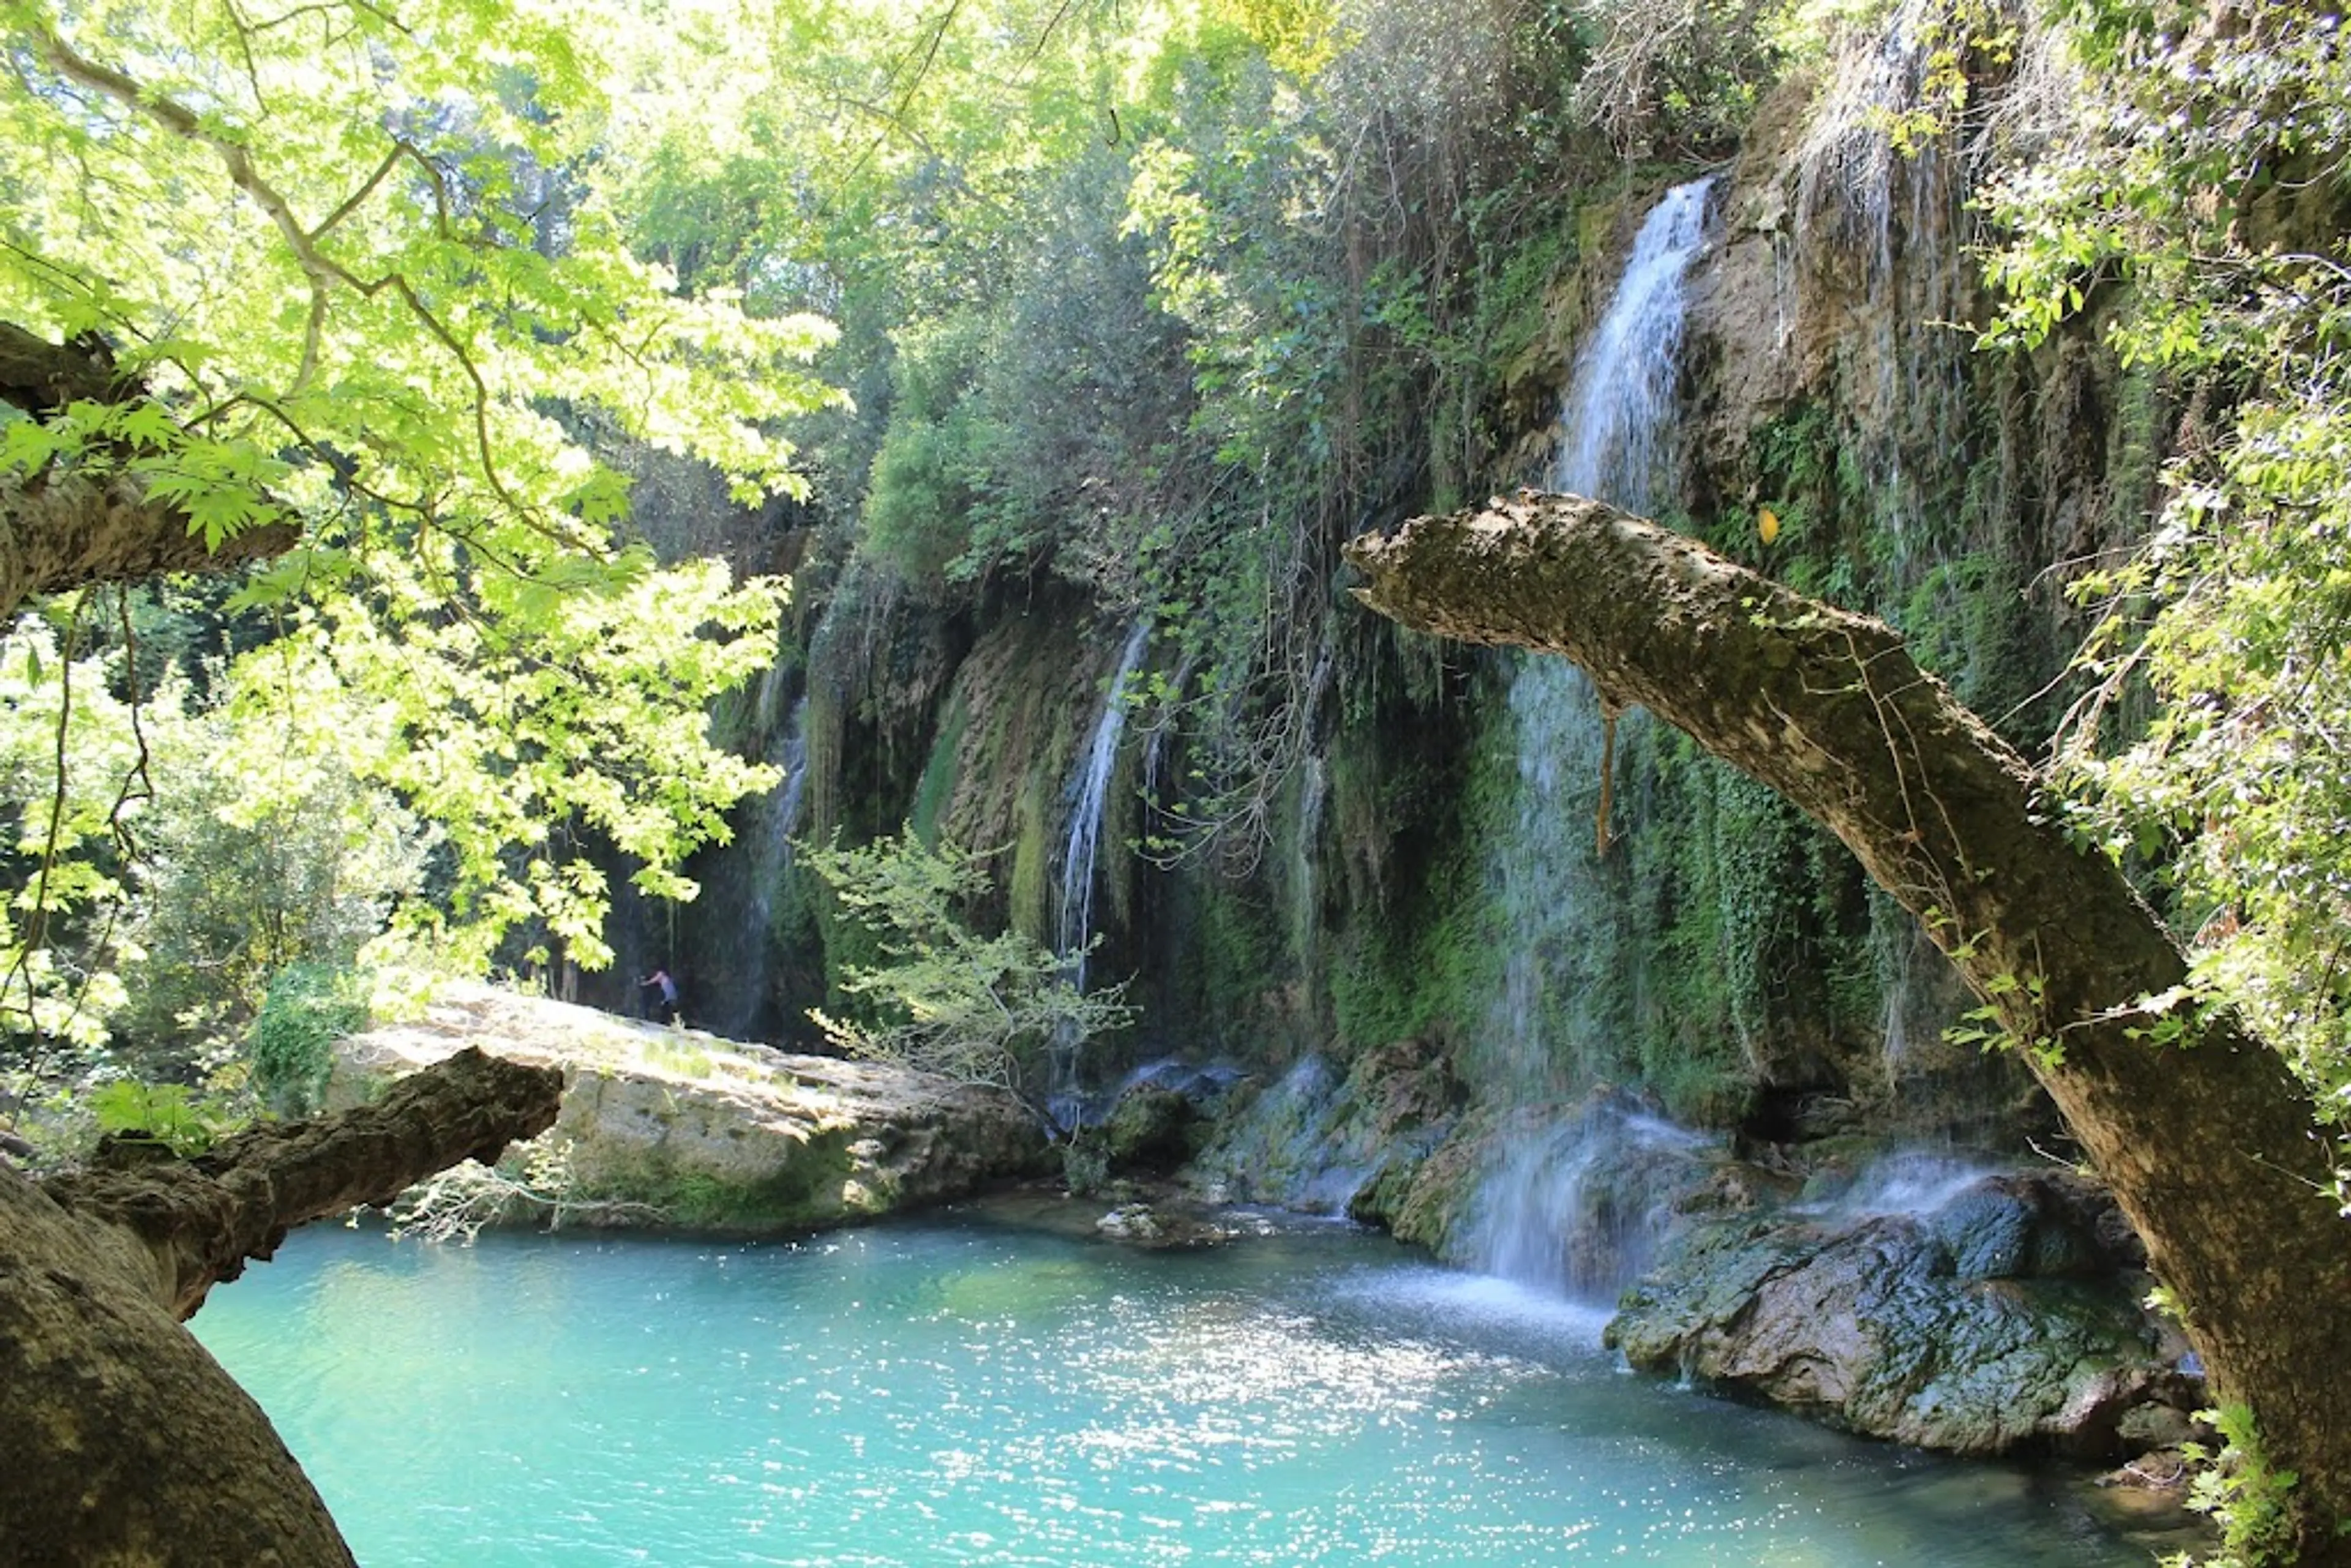 Kursunlu Waterfall and Nature Park